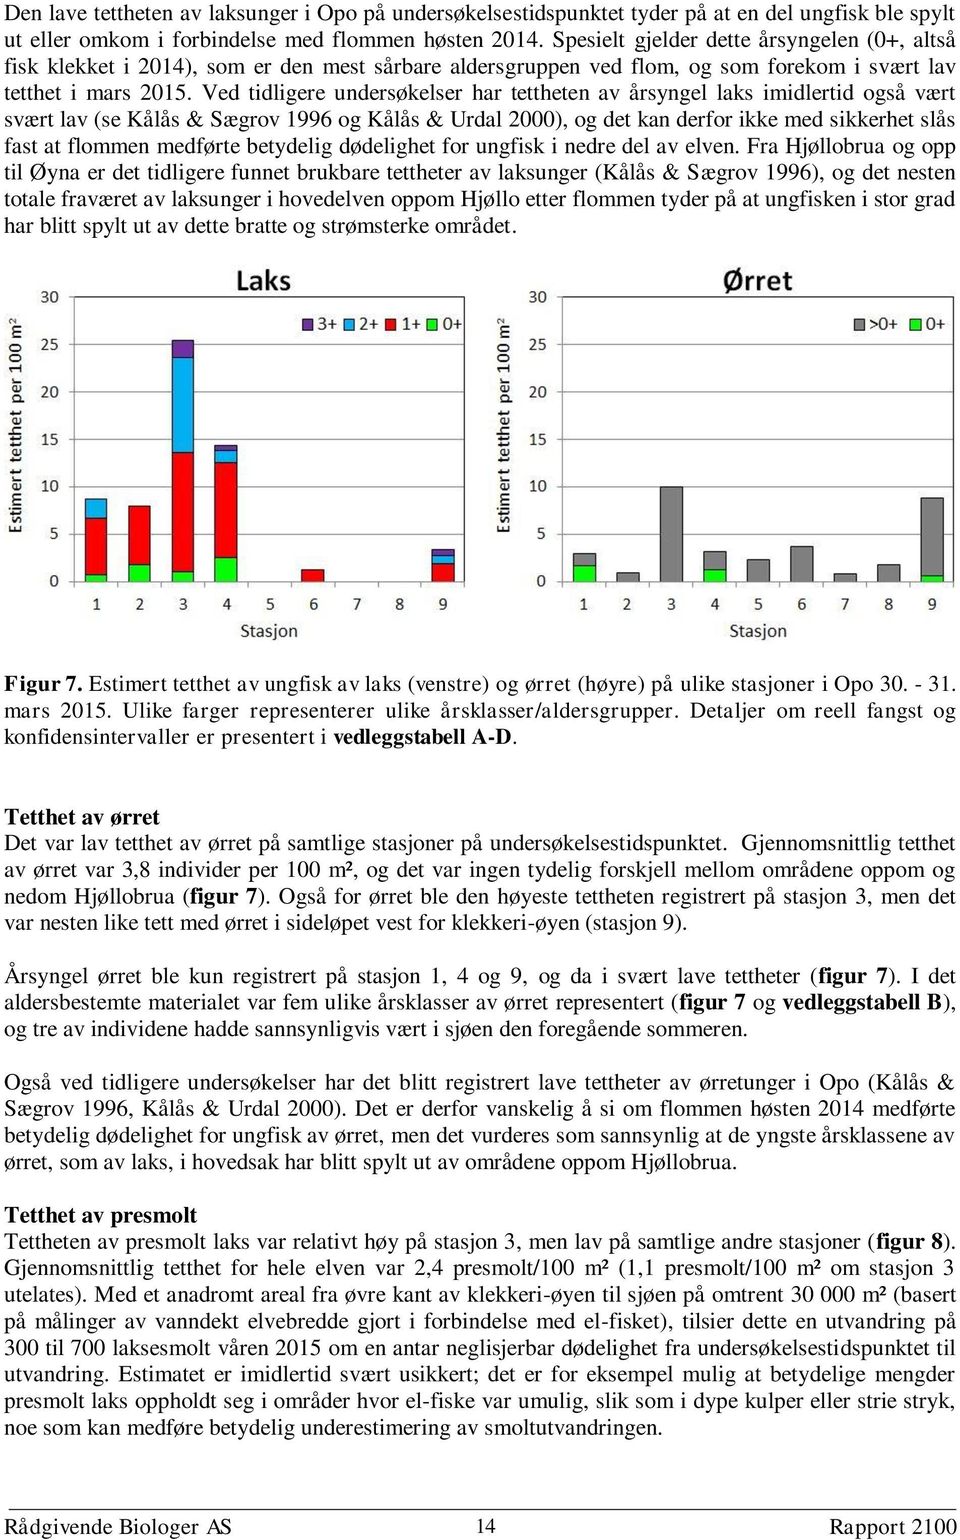 Ved tidligere undersøkelser har tettheten av årsyngel laks imidlertid også vært svært lav (se Kålås & Sægrov 1996 og Kålås & Urdal 2000), og det kan derfor ikke med sikkerhet slås fast at flommen